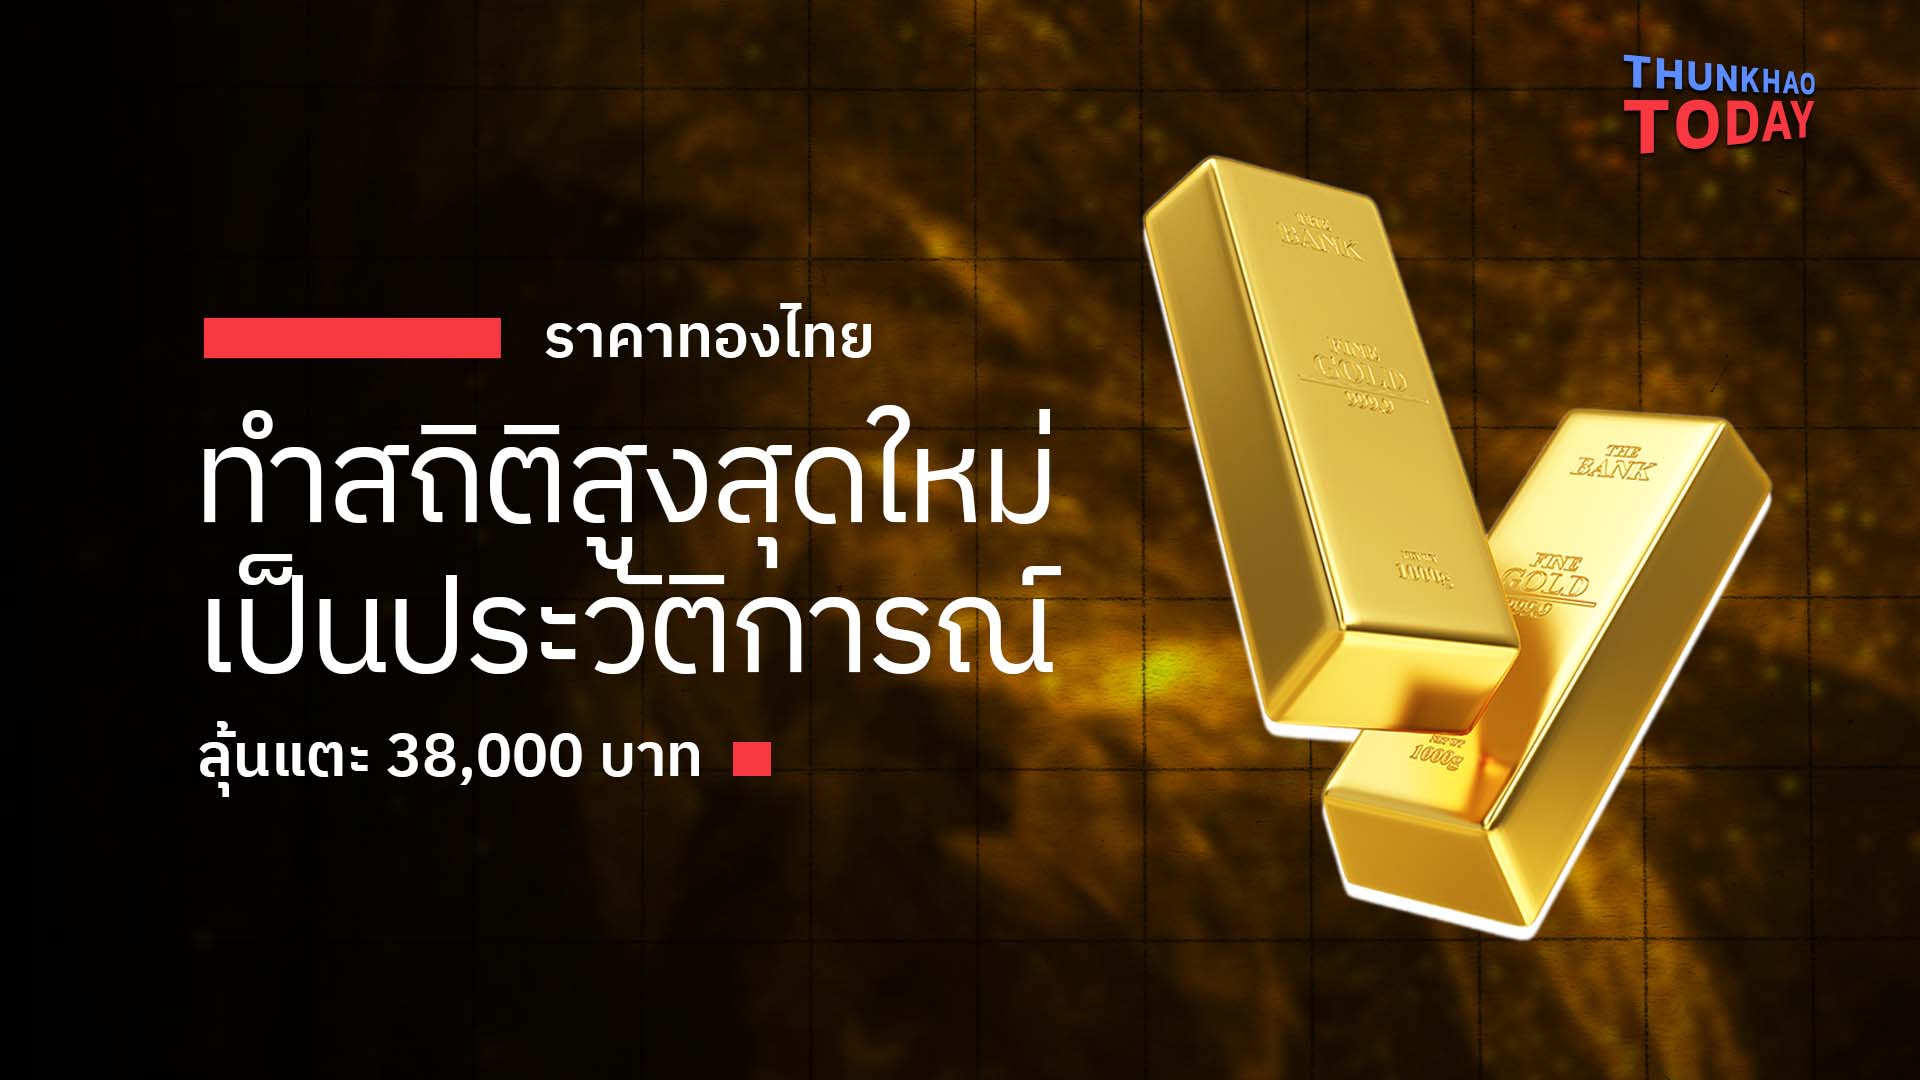 “ราคาทองไทย ทำสถิติสูงสุดใหม่เป็นประวัติการณ์ ลุ้นแตะ 38,000 บาท